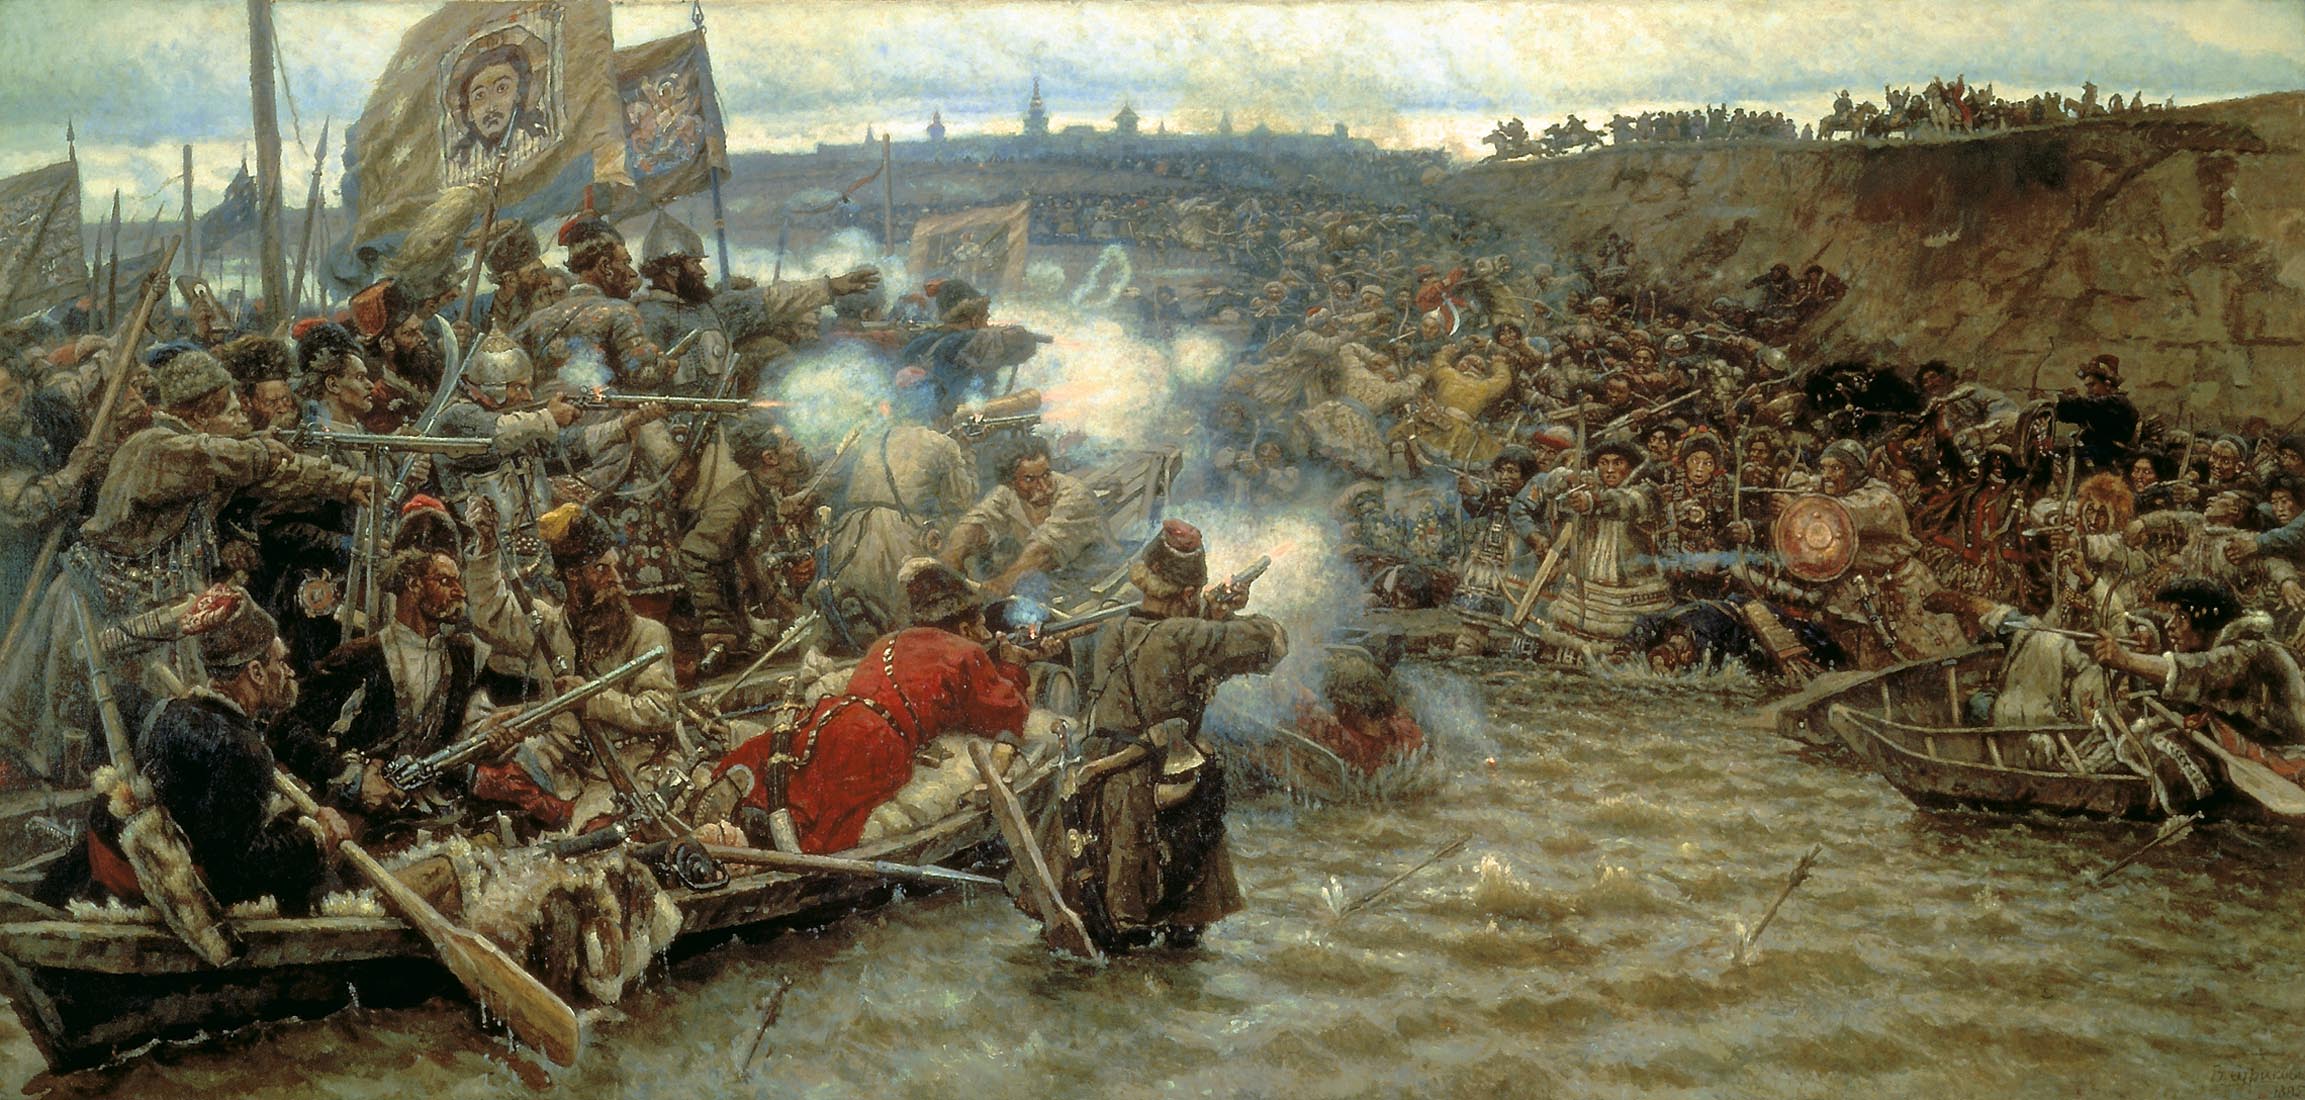 Картина Покорение Сибири Ермаком, Суриков, 1895